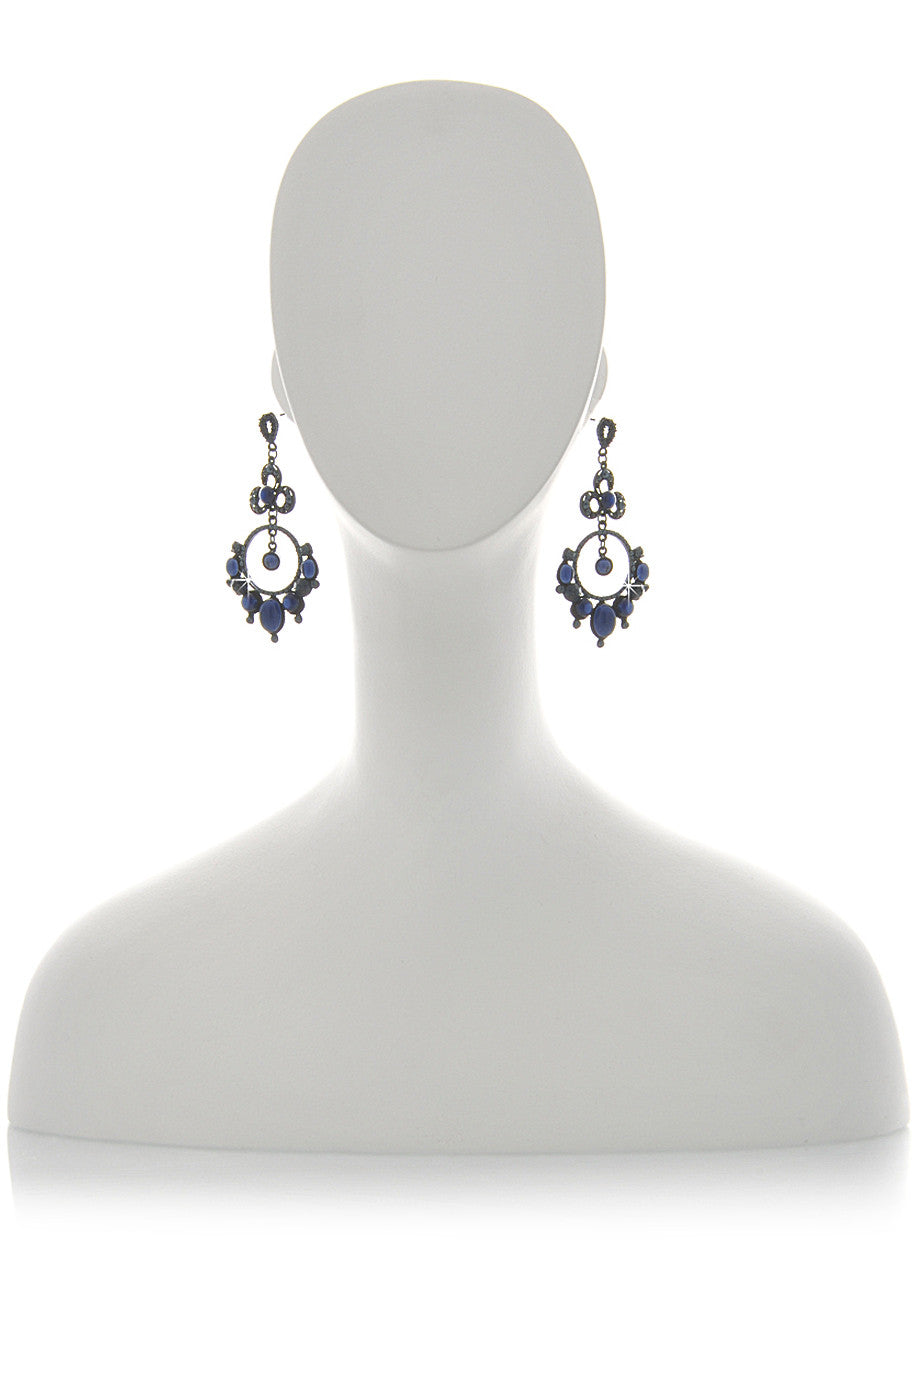 Μπλε Σκουλαρίκια με Κρύσταλλα - Andrea Mader | Κοσμήματα